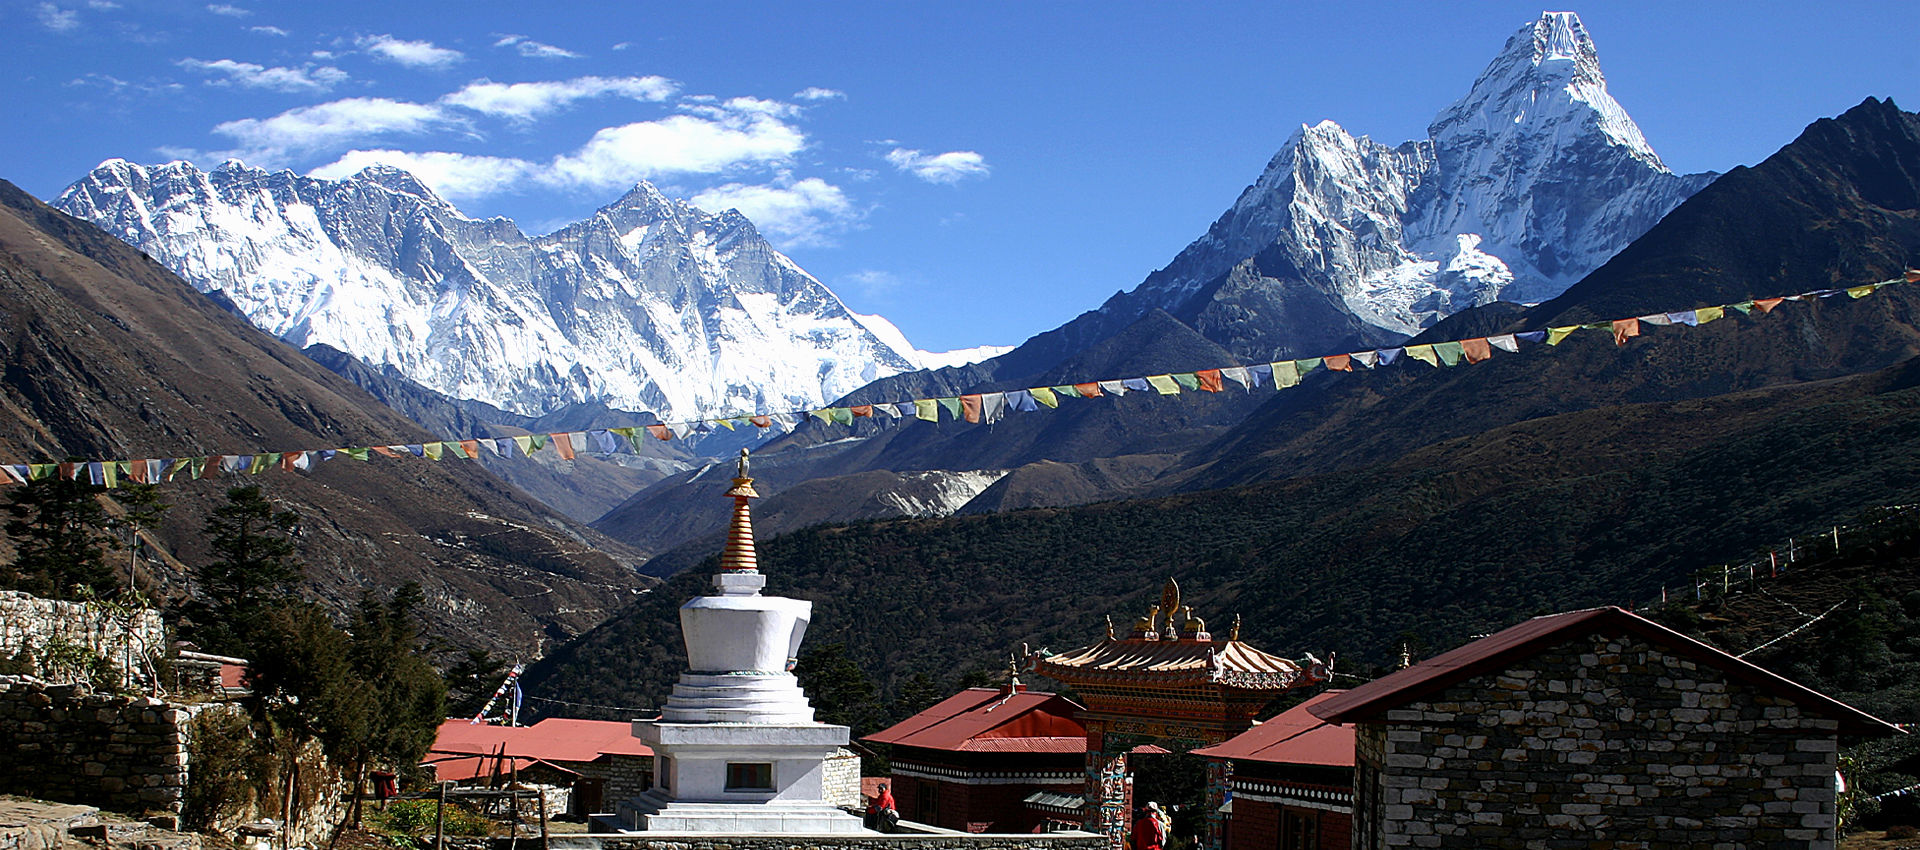 Campamento base del Everest                                                                y Lago Gokyo